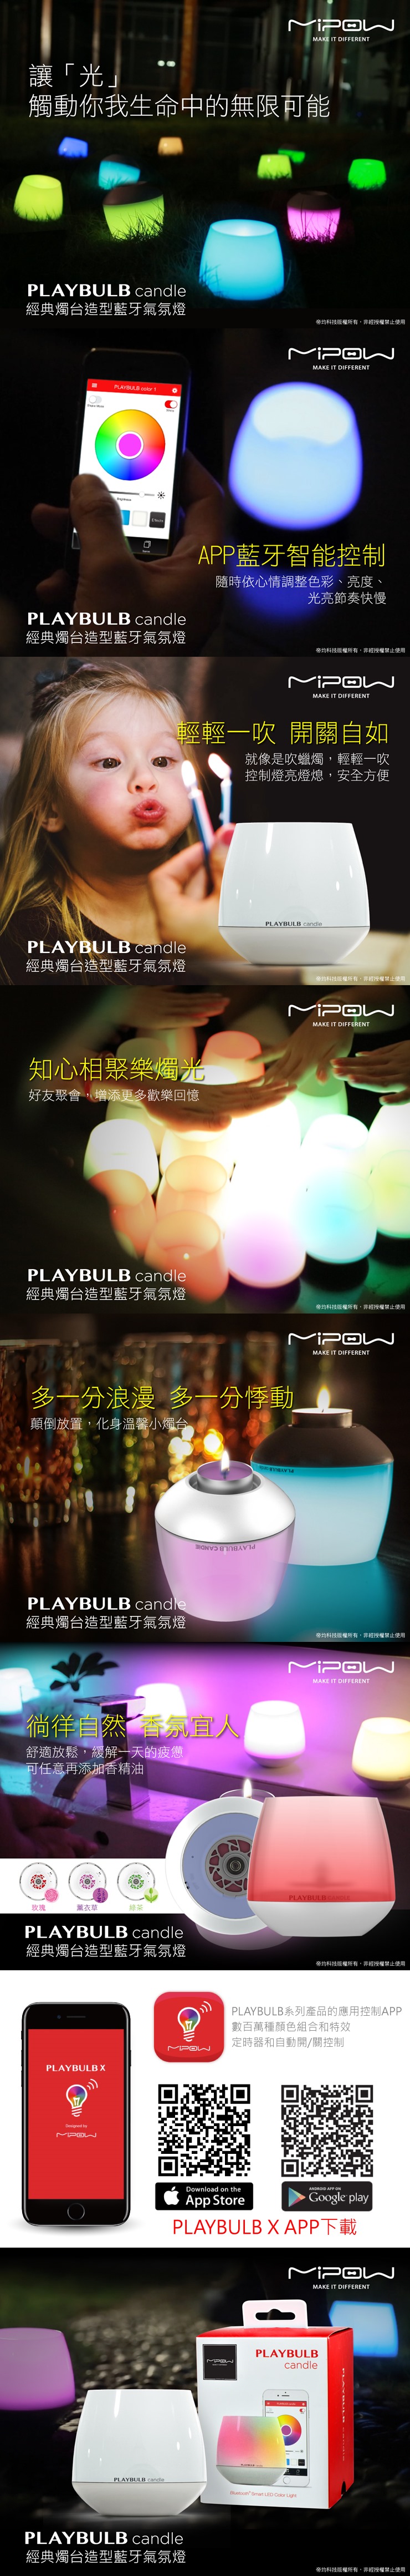 MiPOW PLAYBULB candle 經典燭台造型藍牙氣氛燈(BTL300 電池款)